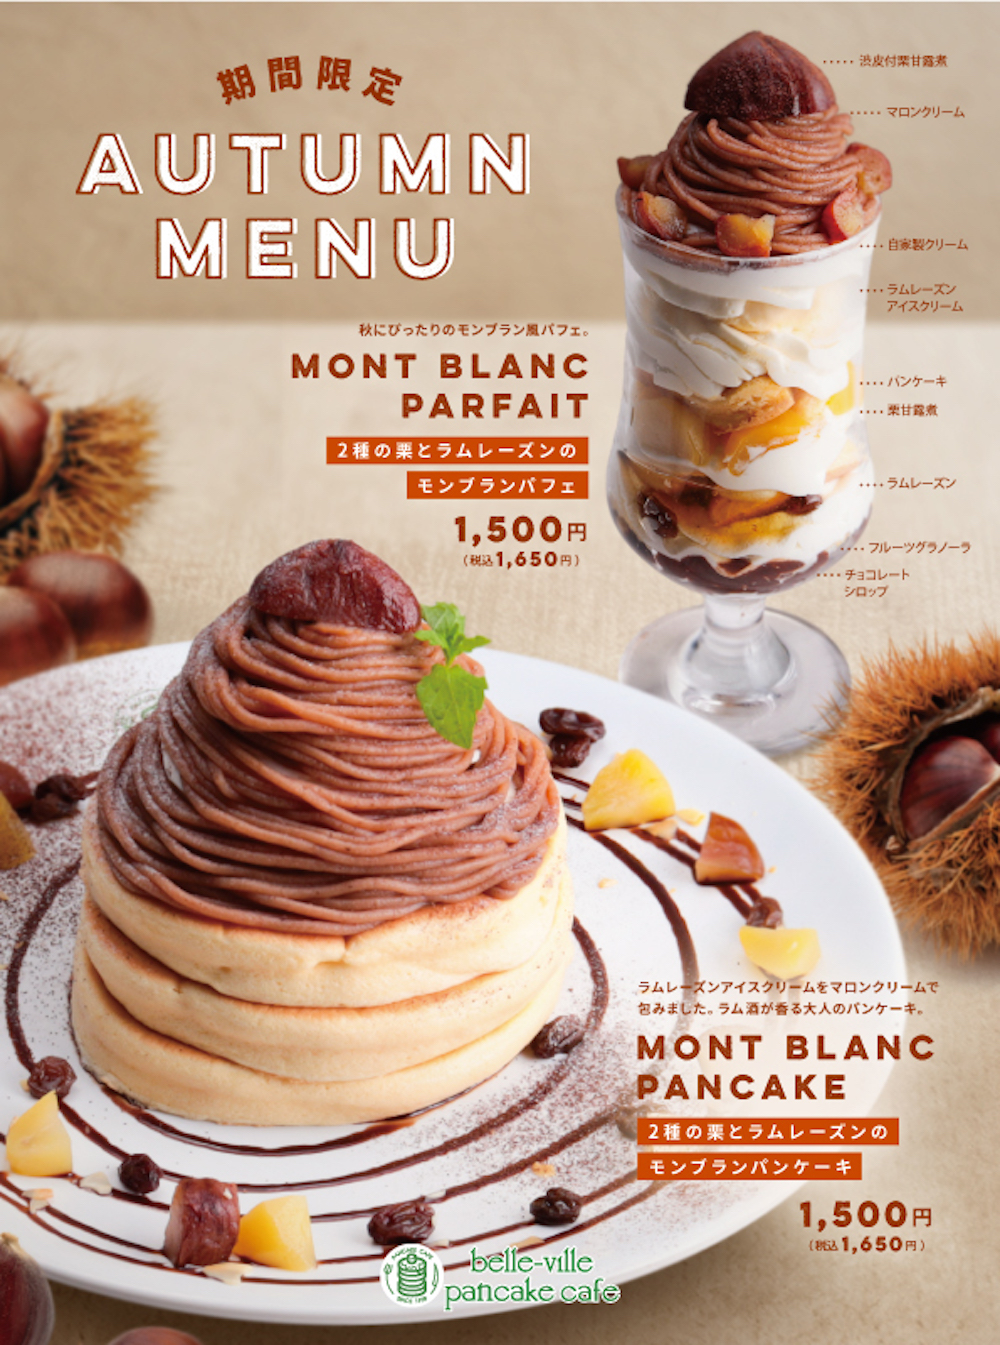 「belle-ville pancake cafe」の秋スイーツのイメージ